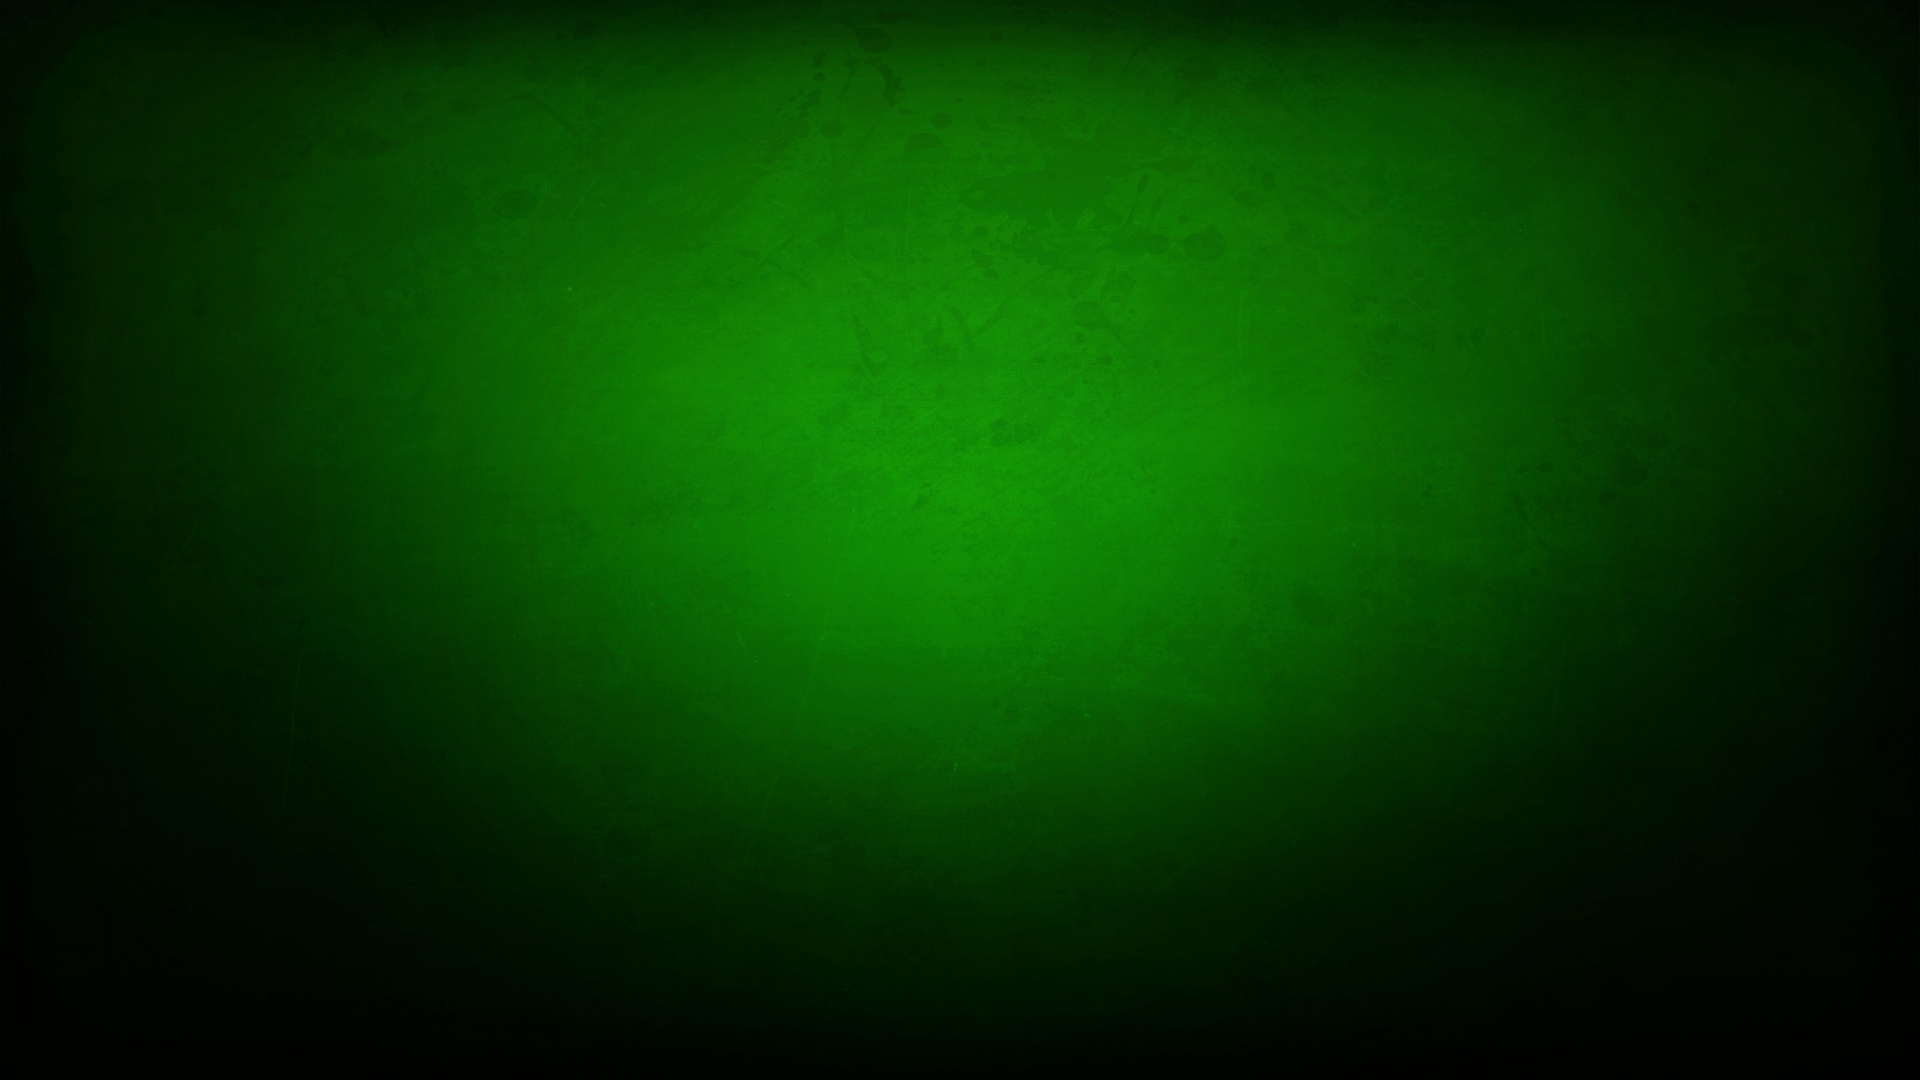 Hình nền Grunge Green sẽ đem lại cảm giác mạnh mẽ và bổ sung cho thiết bị của bạn. Với vật liệu xước xác và màu xanh lá cây lấp lánh, hình nền này sẽ tạo ra sự khác biệt và sáng tạo cho thiết bị của bạn.